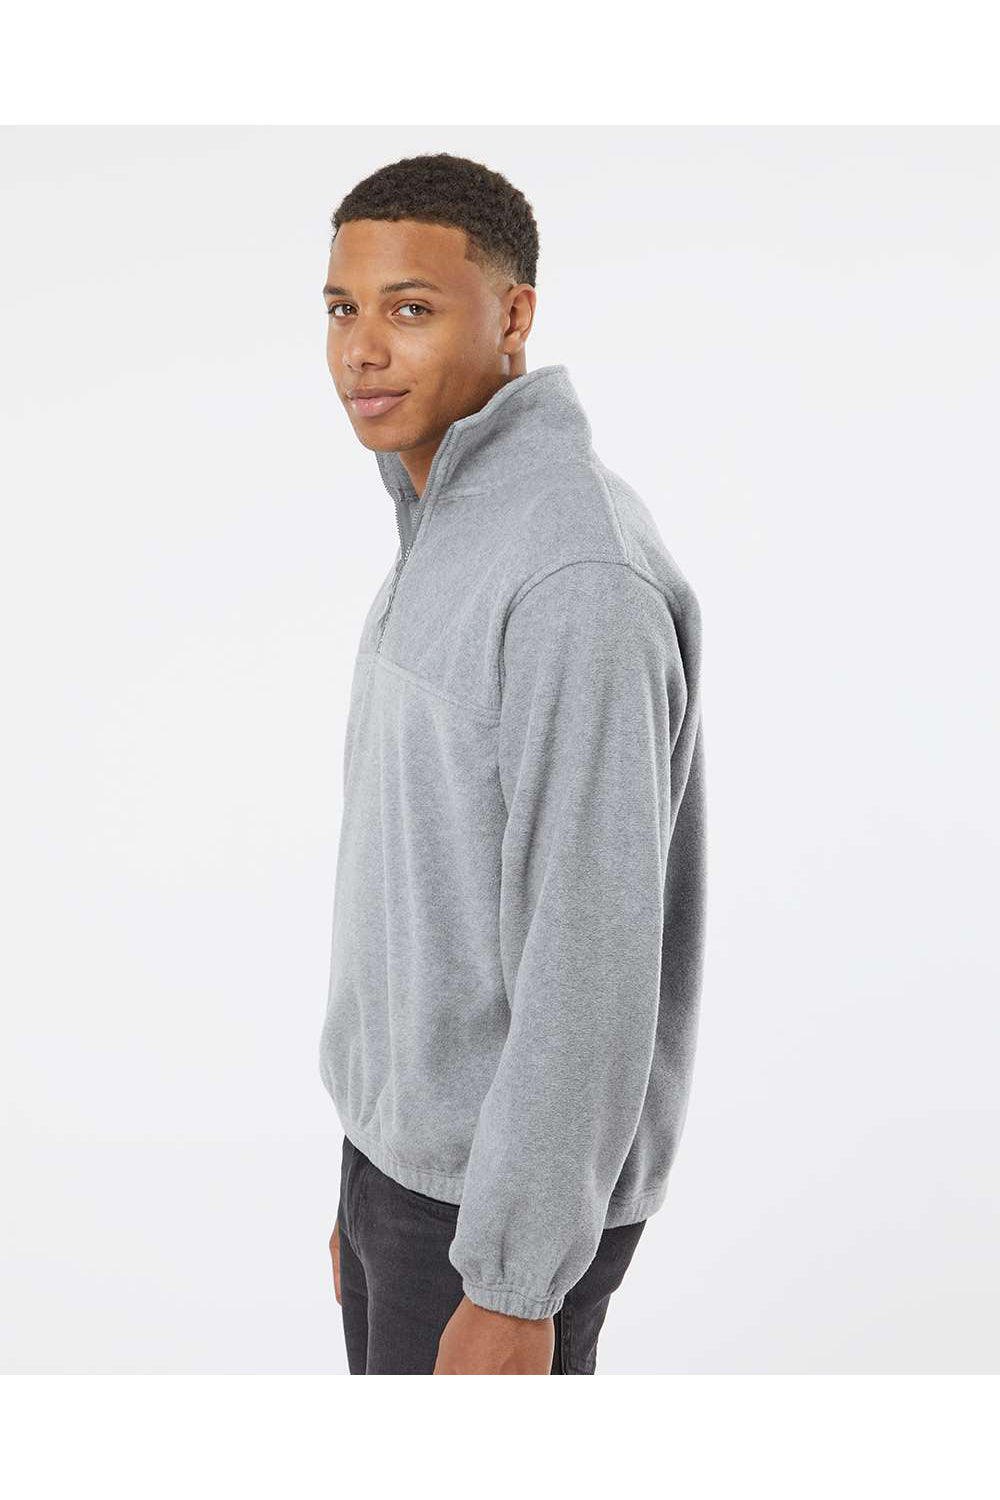 Burnside 3052 Mens Polar Fleece 1/4 Zip Sweatshirt Heather Grey Model Side